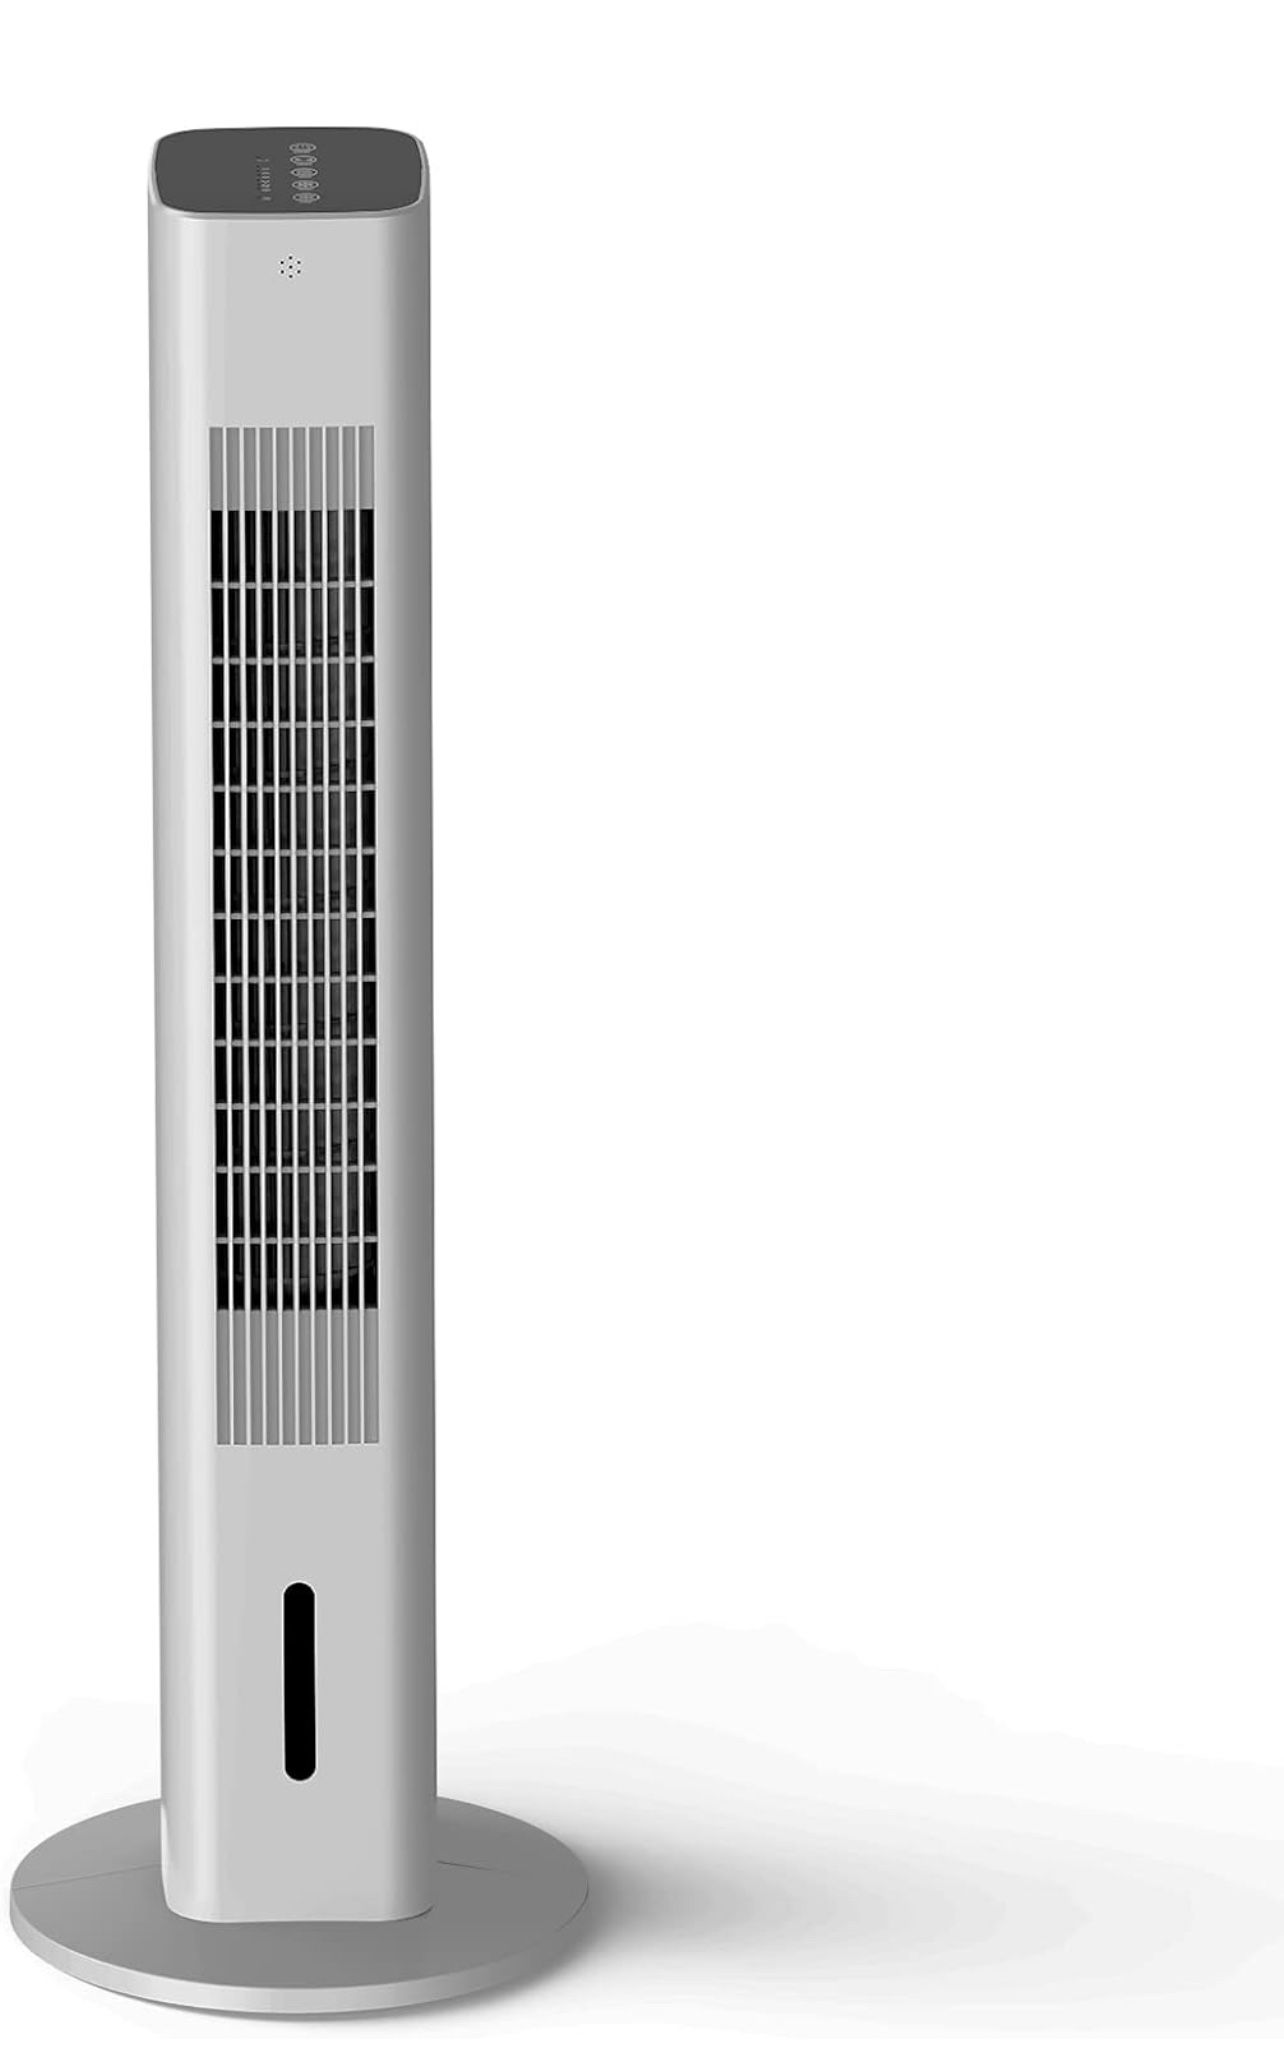 Cozzyben 35" Evaporative Tower Fan Portable Air Cooler,